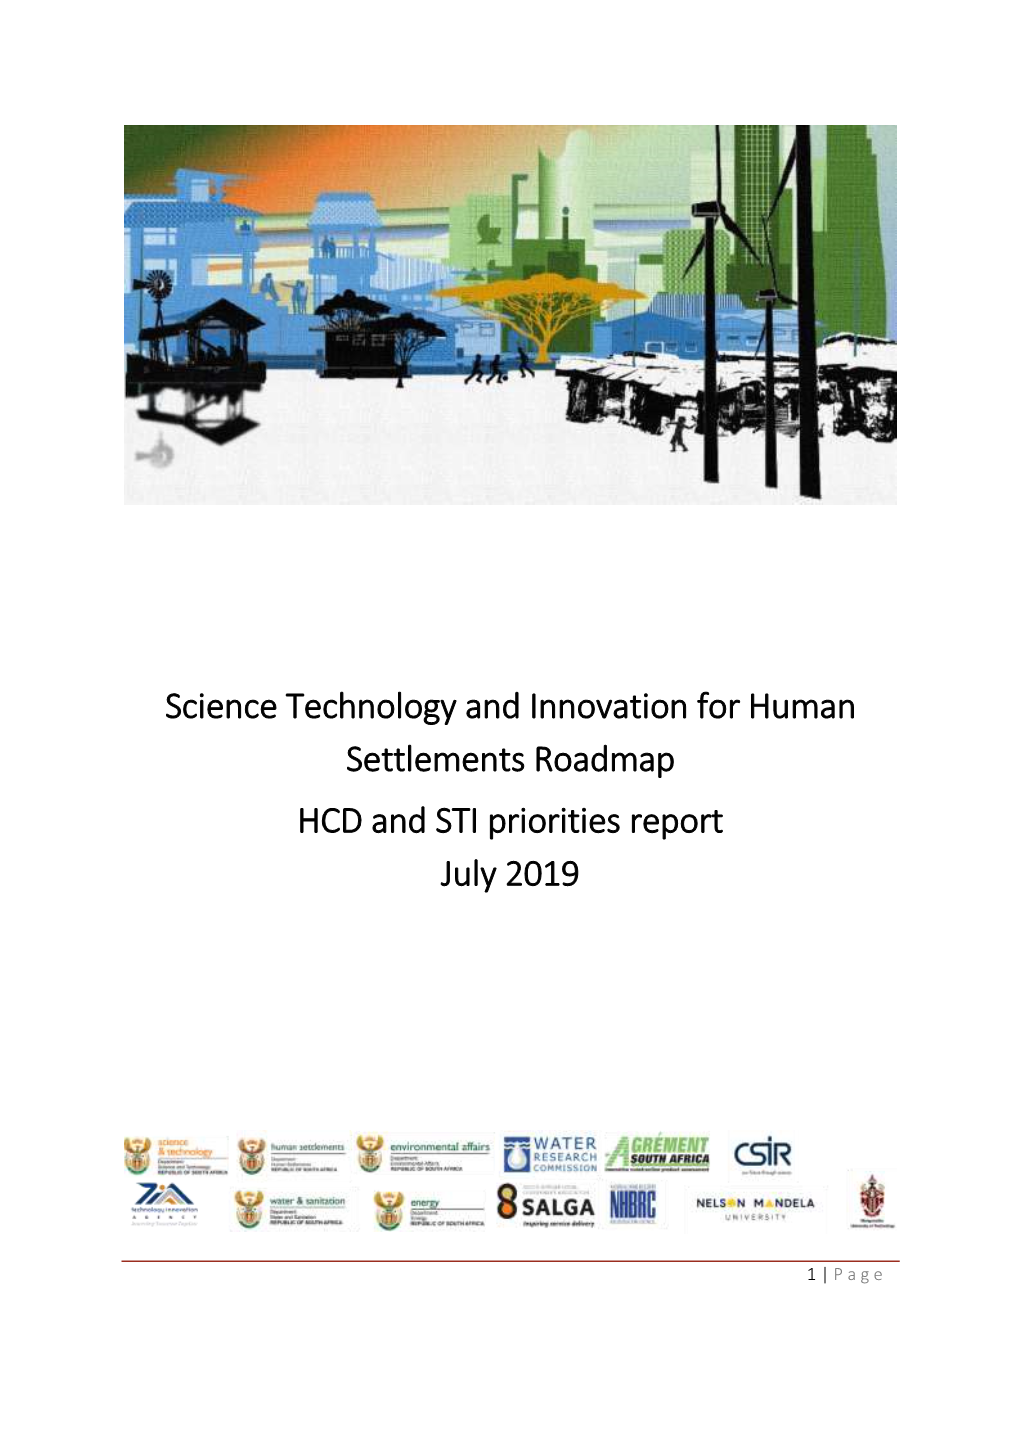 HCD and STI Priorities Report